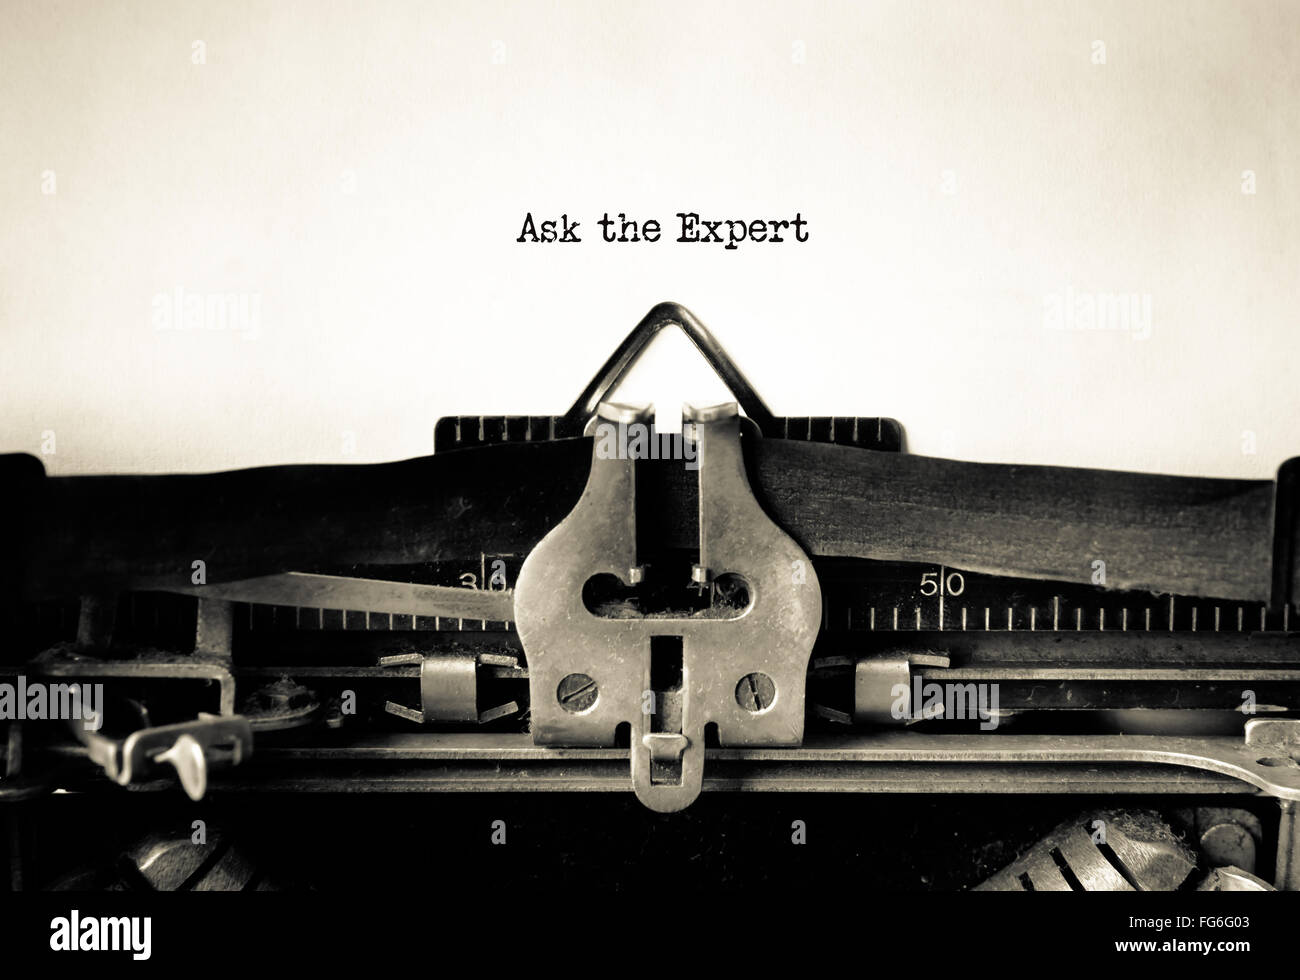 Pregunte al experto mensaje escrito en vintage typewriter Foto de stock